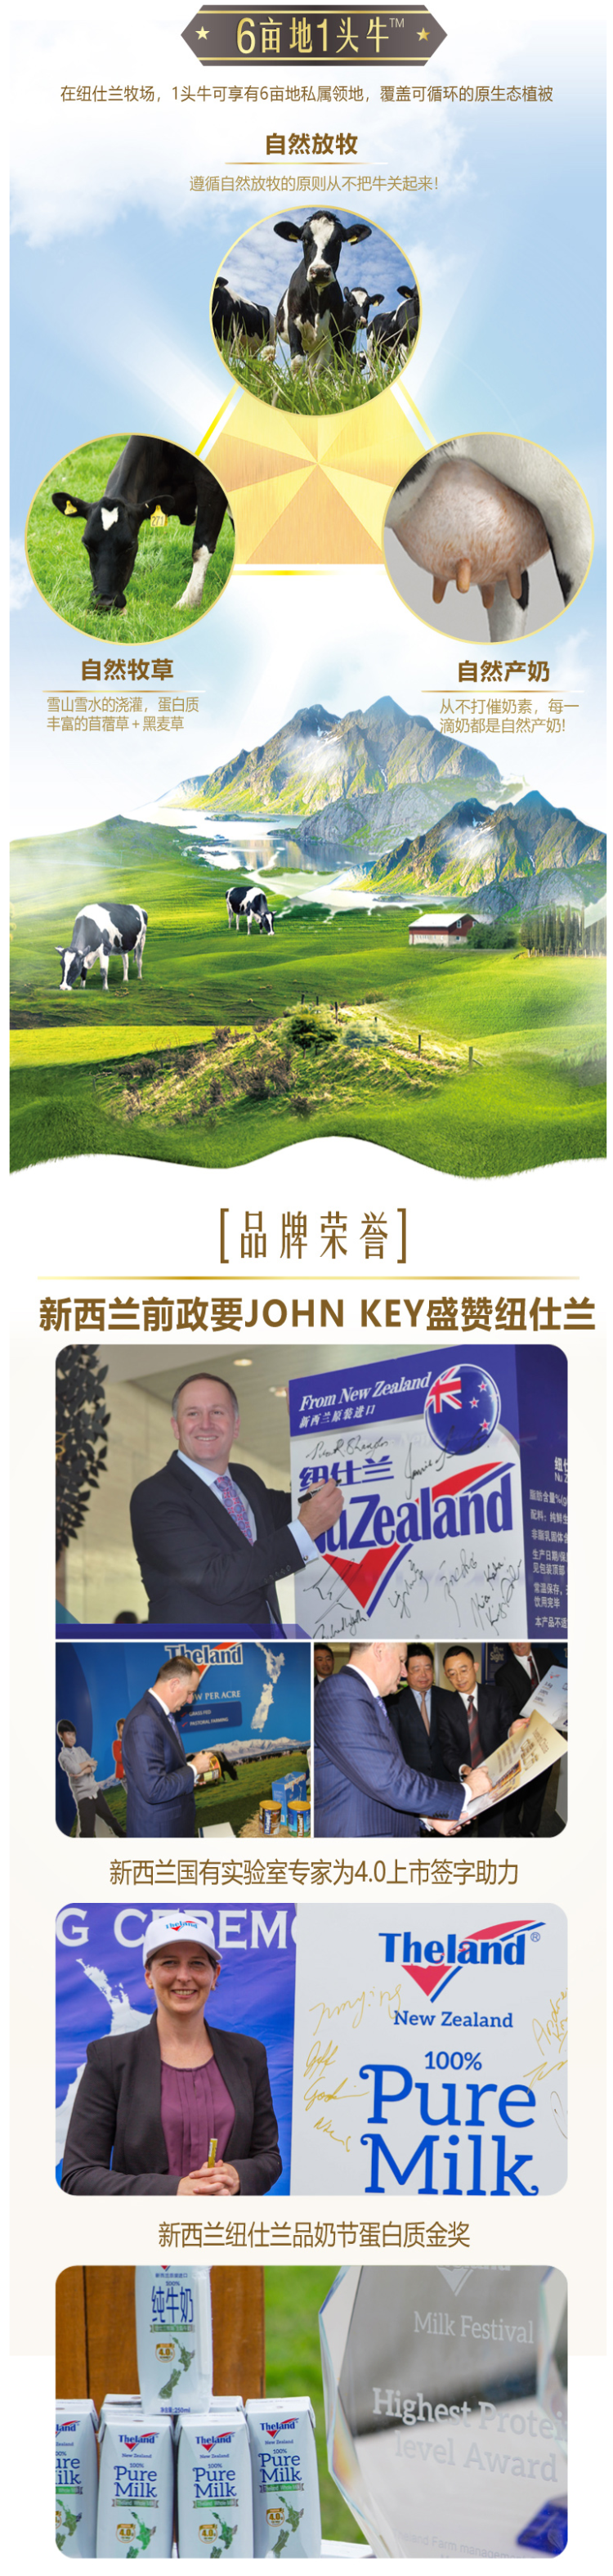 新西兰原装进口 纽仕兰 4.0g乳蛋白全脂纯牛奶 250ml*24盒 图4